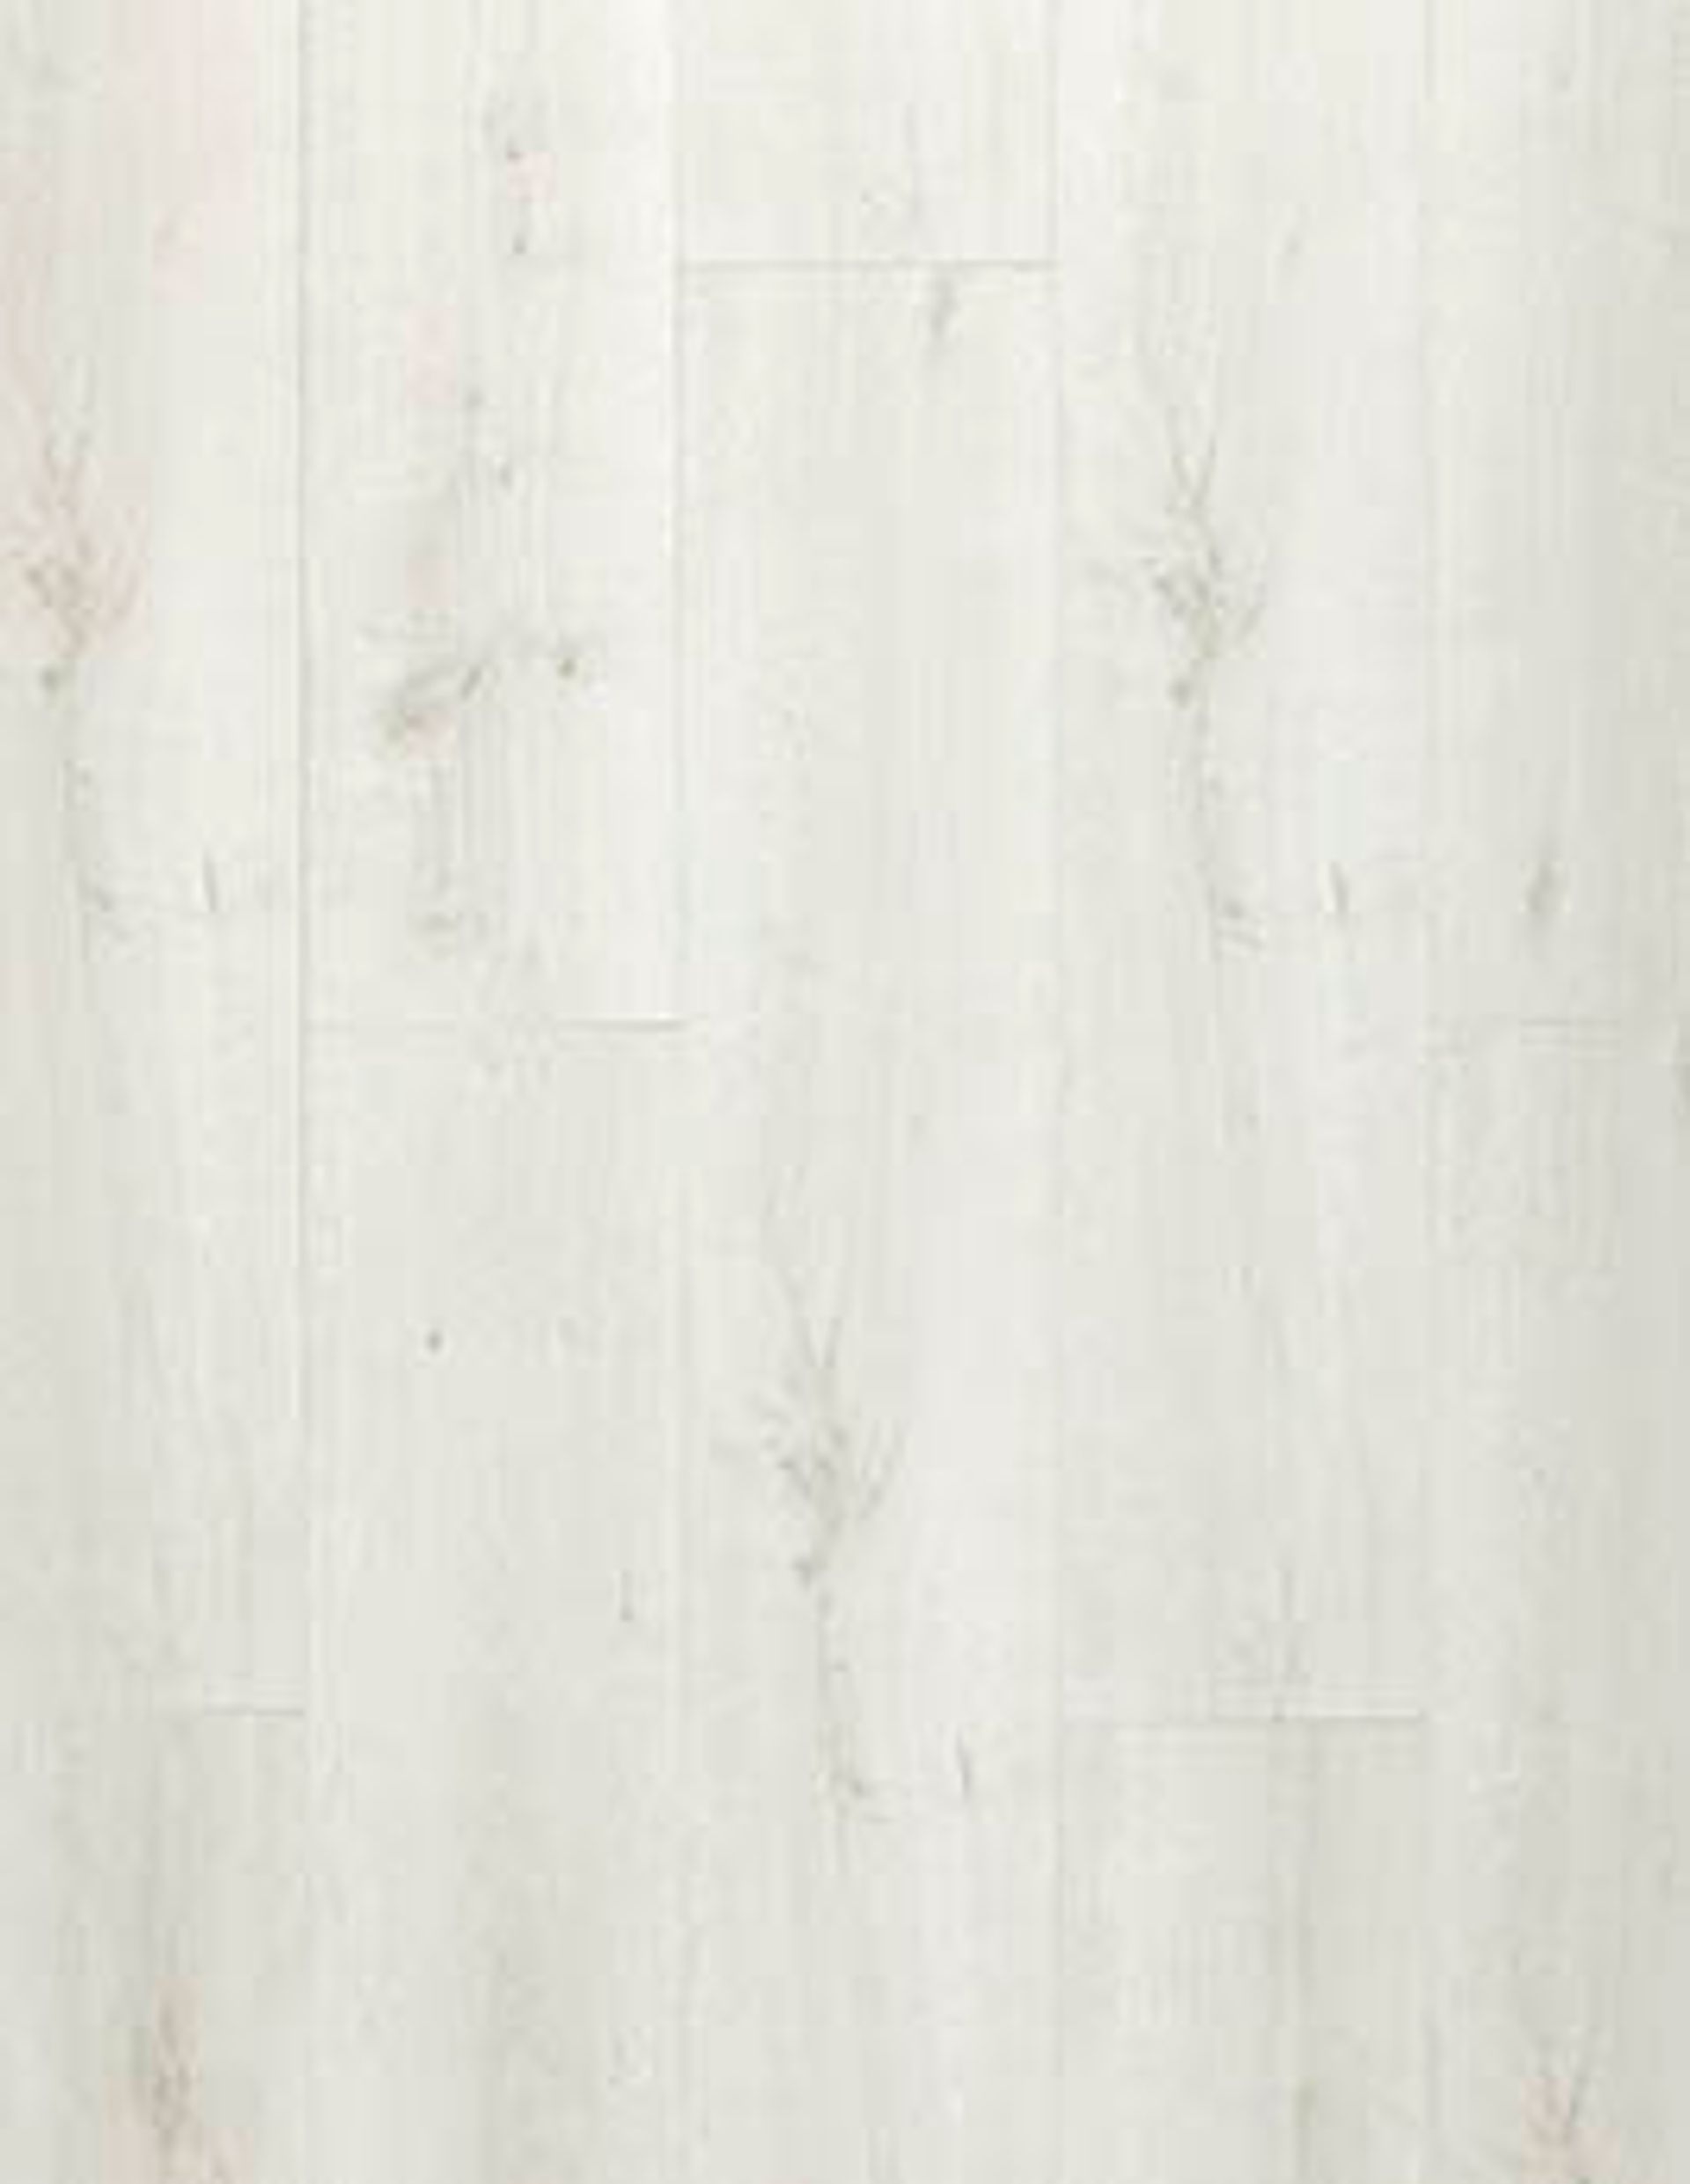 Revêtement minéral composite CERAMIN TILES SJ, blanc, lame 20.80 x 129.40 cm